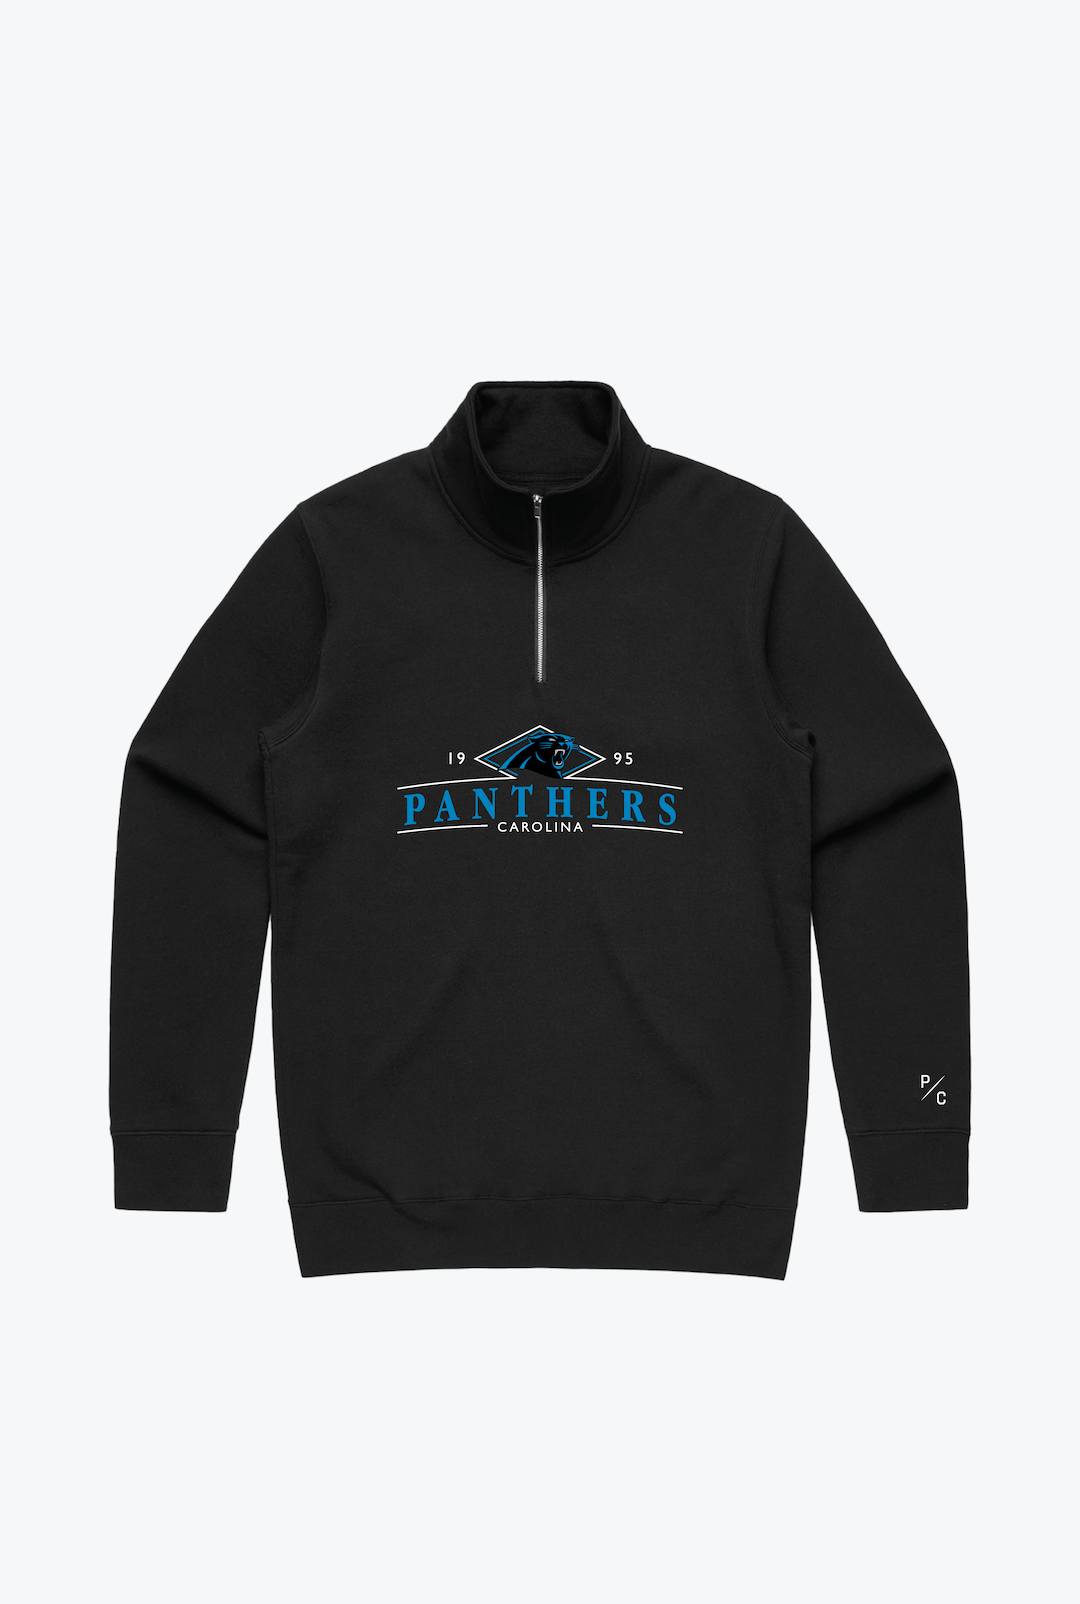 Carolina Panthers Quarter Zip - Black